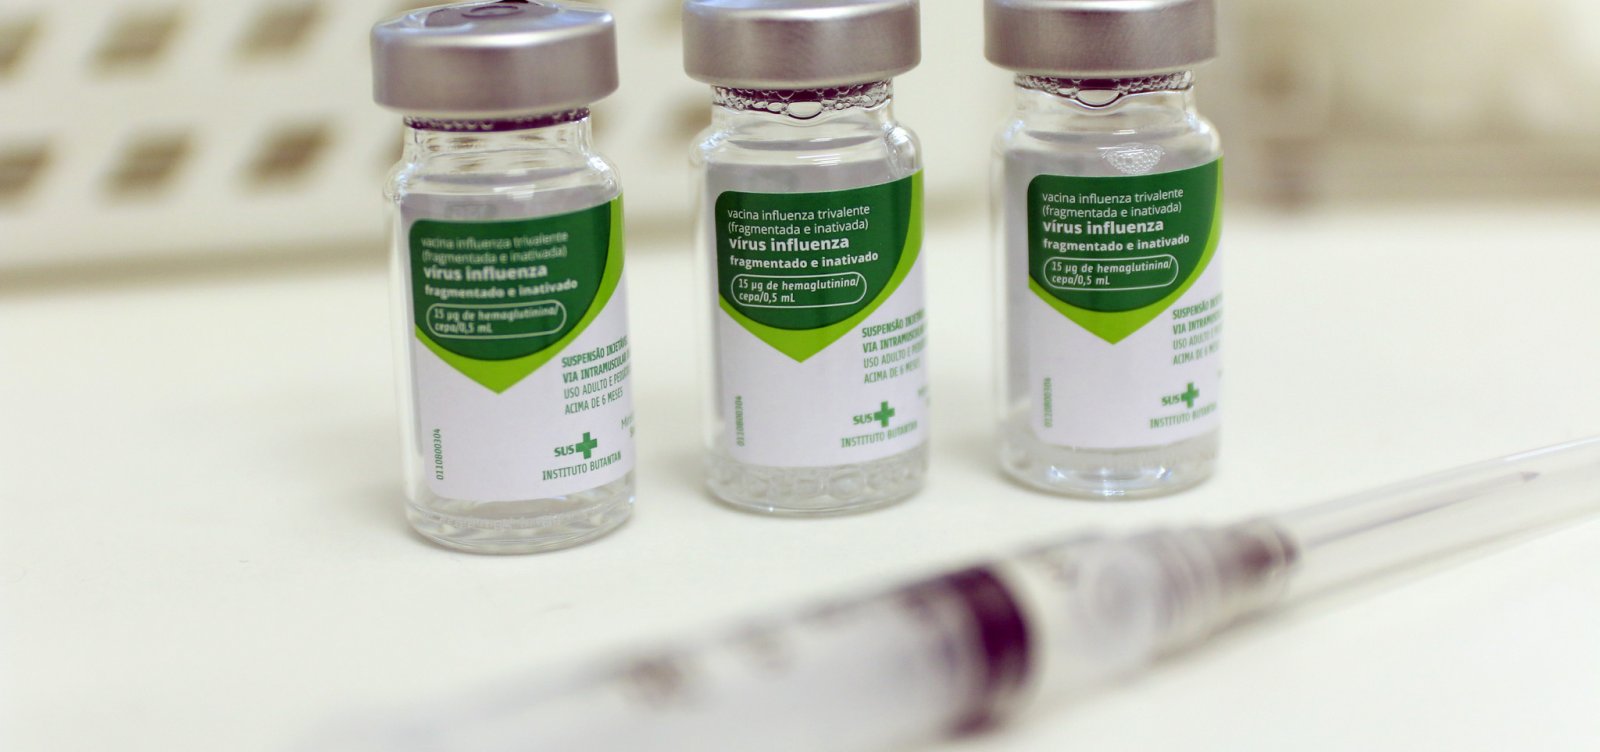 Brasil tem 839 mortes por gripe em 2018; vacinação atinge 90% do público-alvo